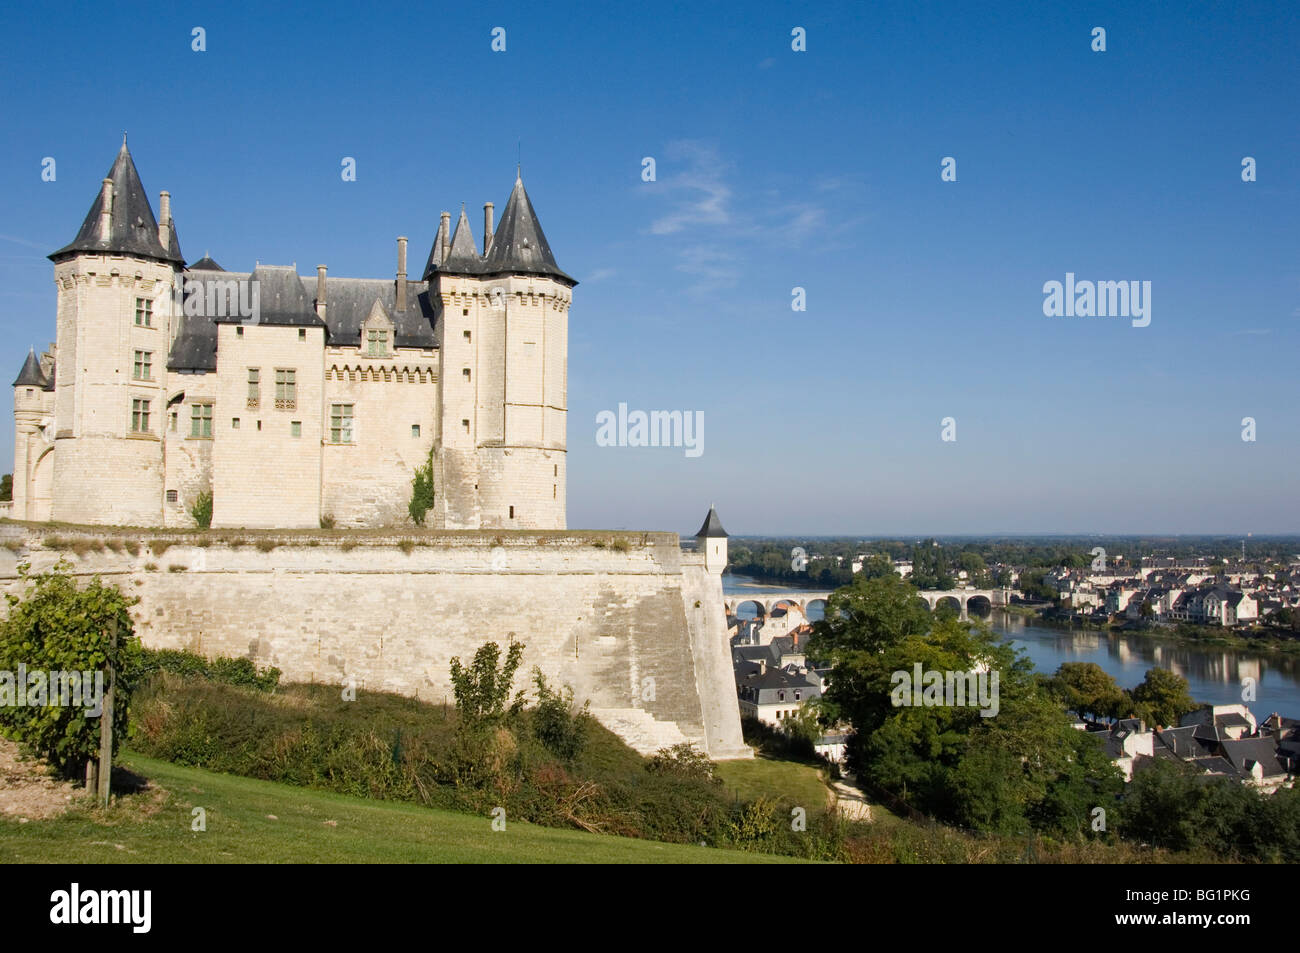 The Chateau de Saumur overlooking the River Loire and city, Maine-et-Loire, Pays de la Loire, France, Europe Stock Photo